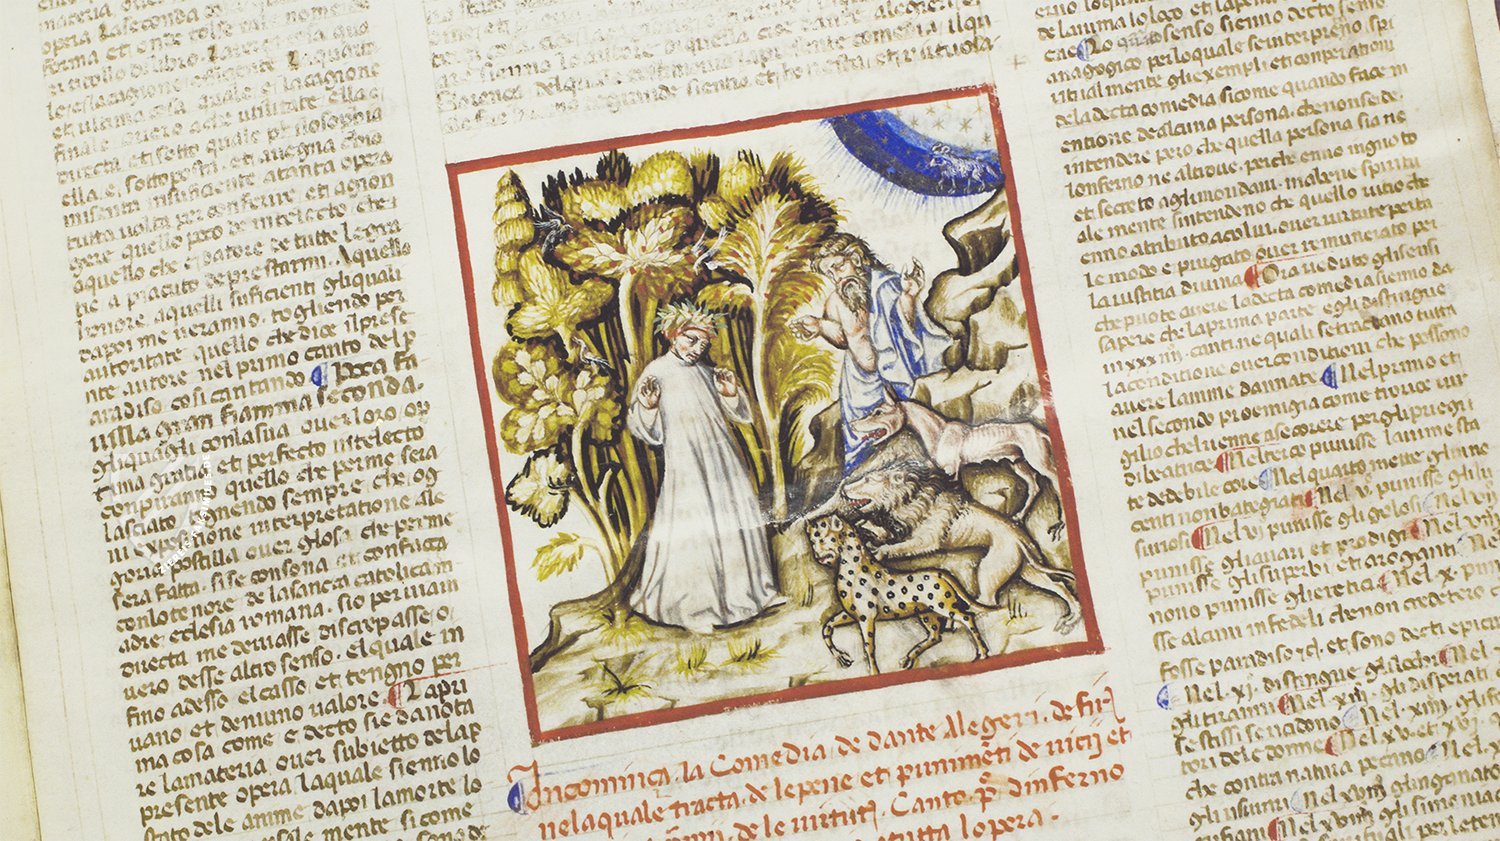 Eine von vielen Inspirationen für Geoffrey Chaucer: Dantes Opus Magnum (Dante Alighieri - Göttliche Komödie - Gradenighiano Codex, Venedig oder Bologna (Italien) — 1392–1393 oder 1399–1400)